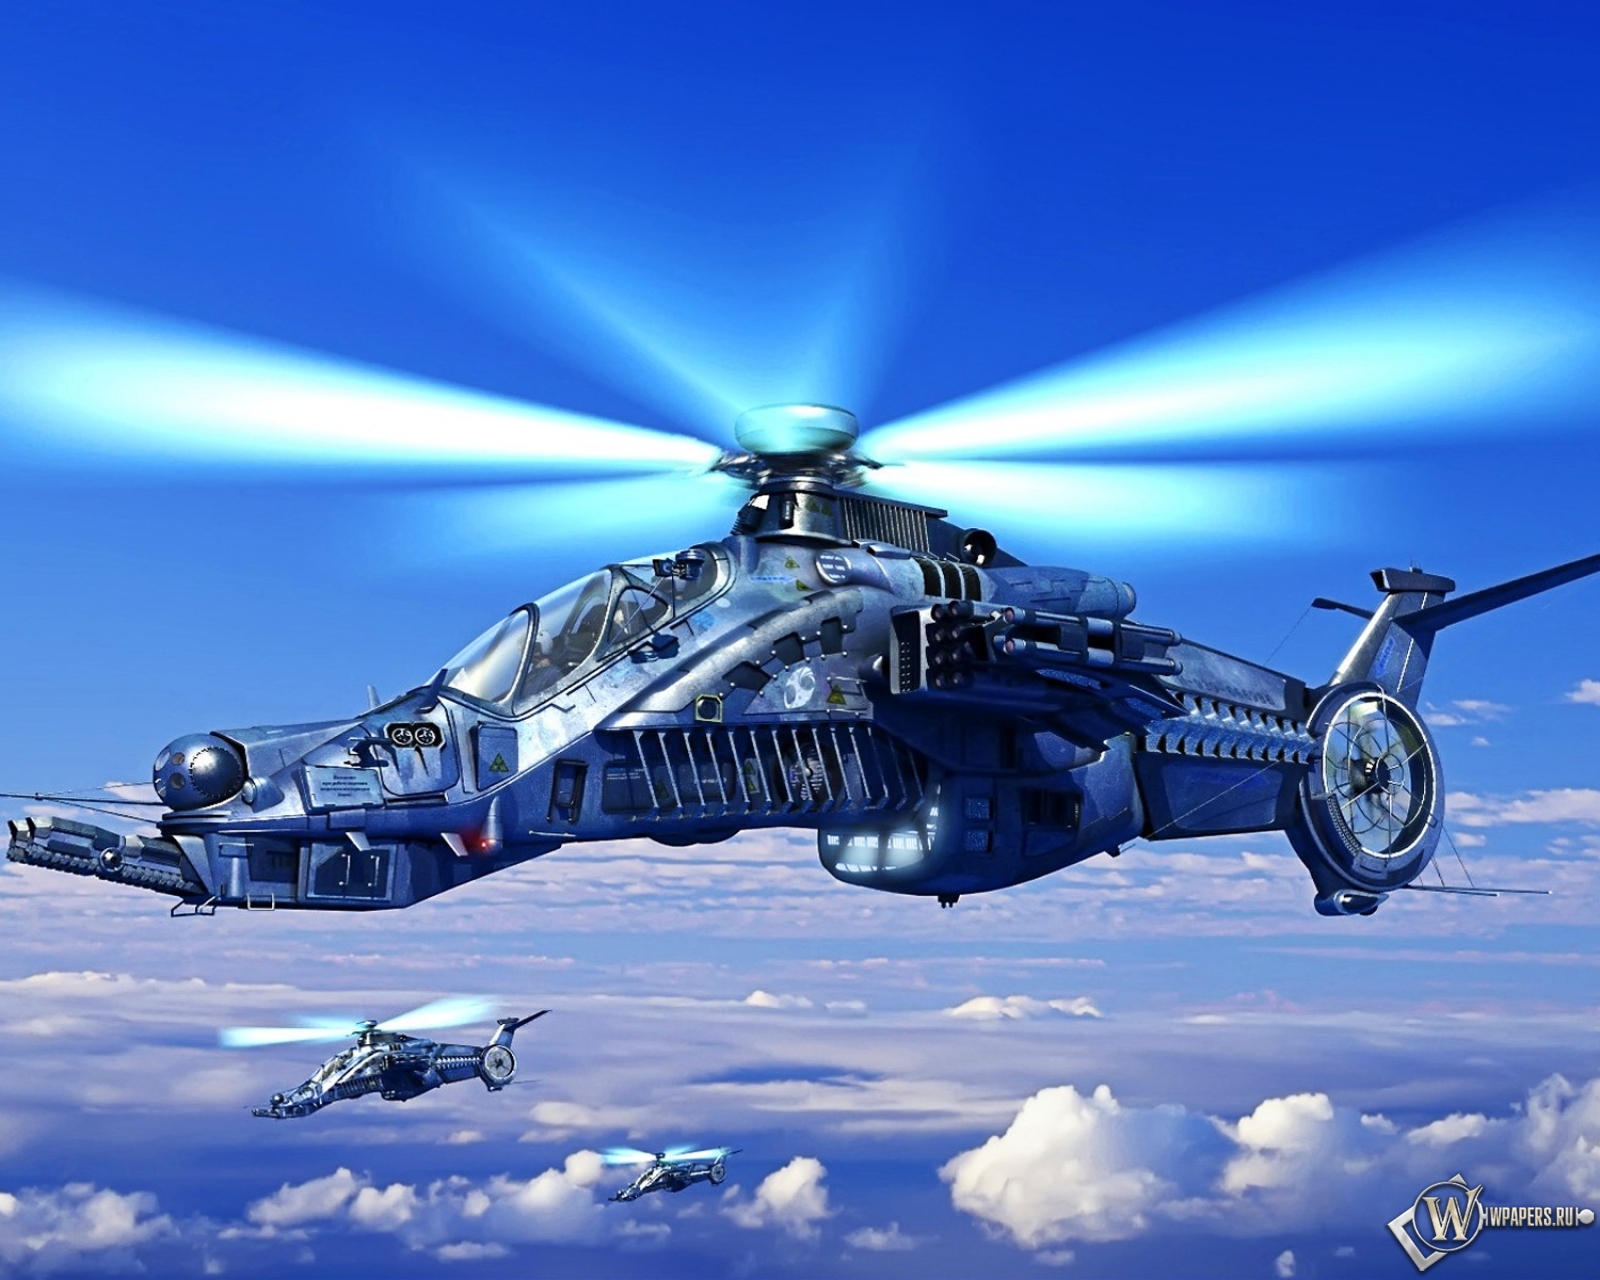 Вертолет будующего 1600x1280